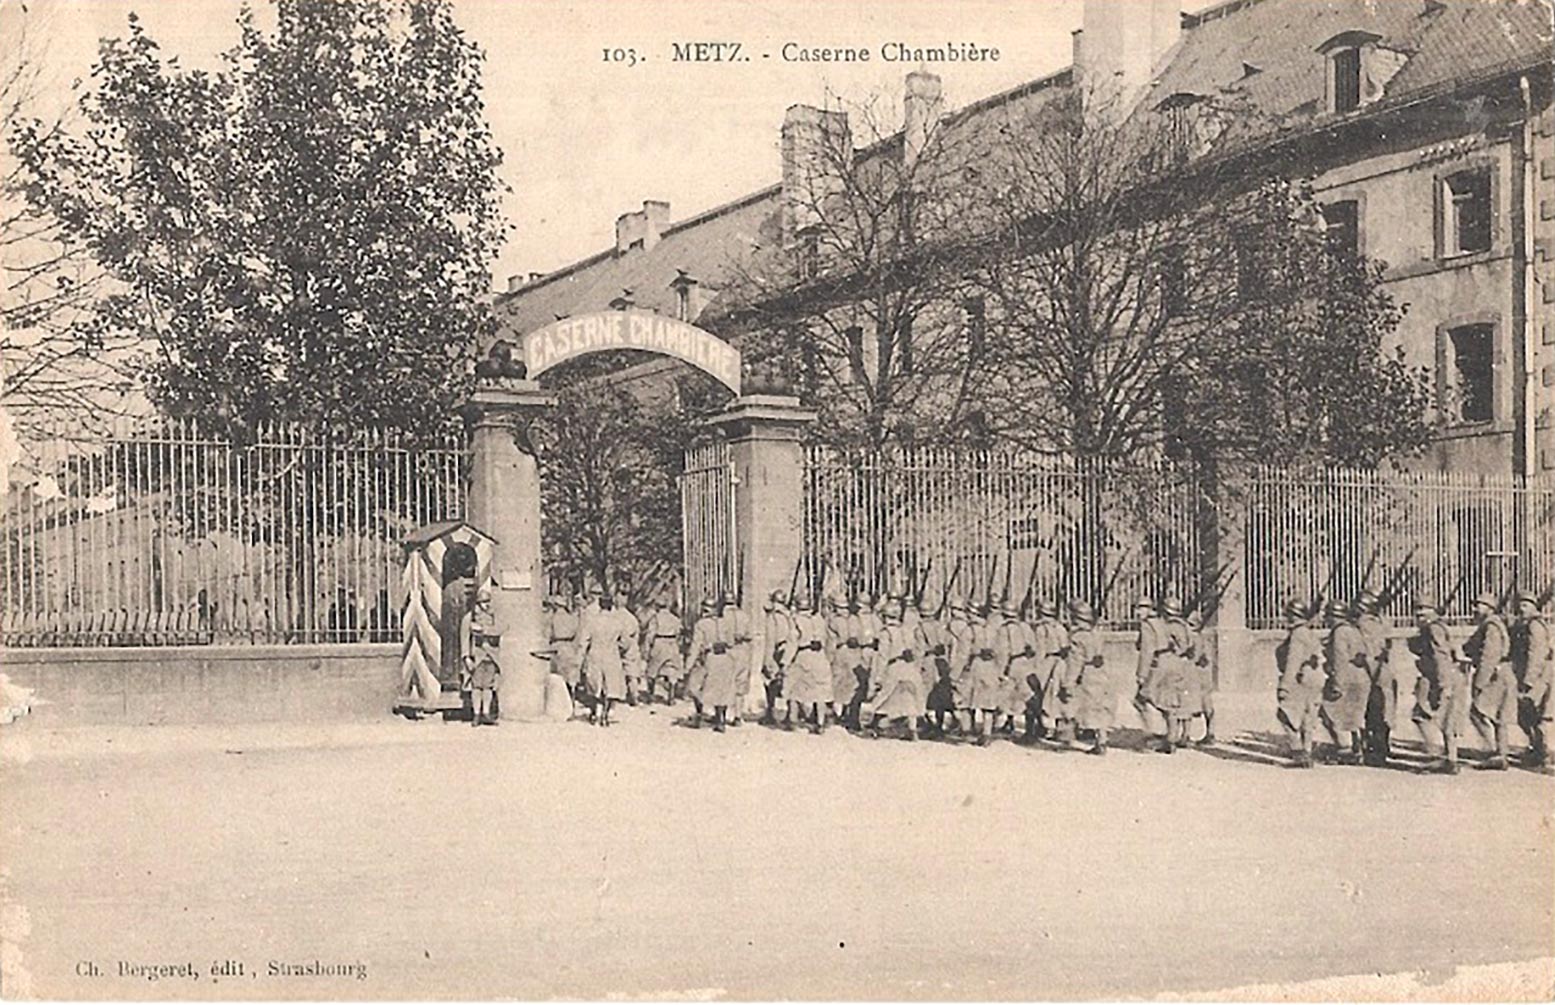 Ligne Maginot - Caserne Chambières - Caserne Chambières à Metz